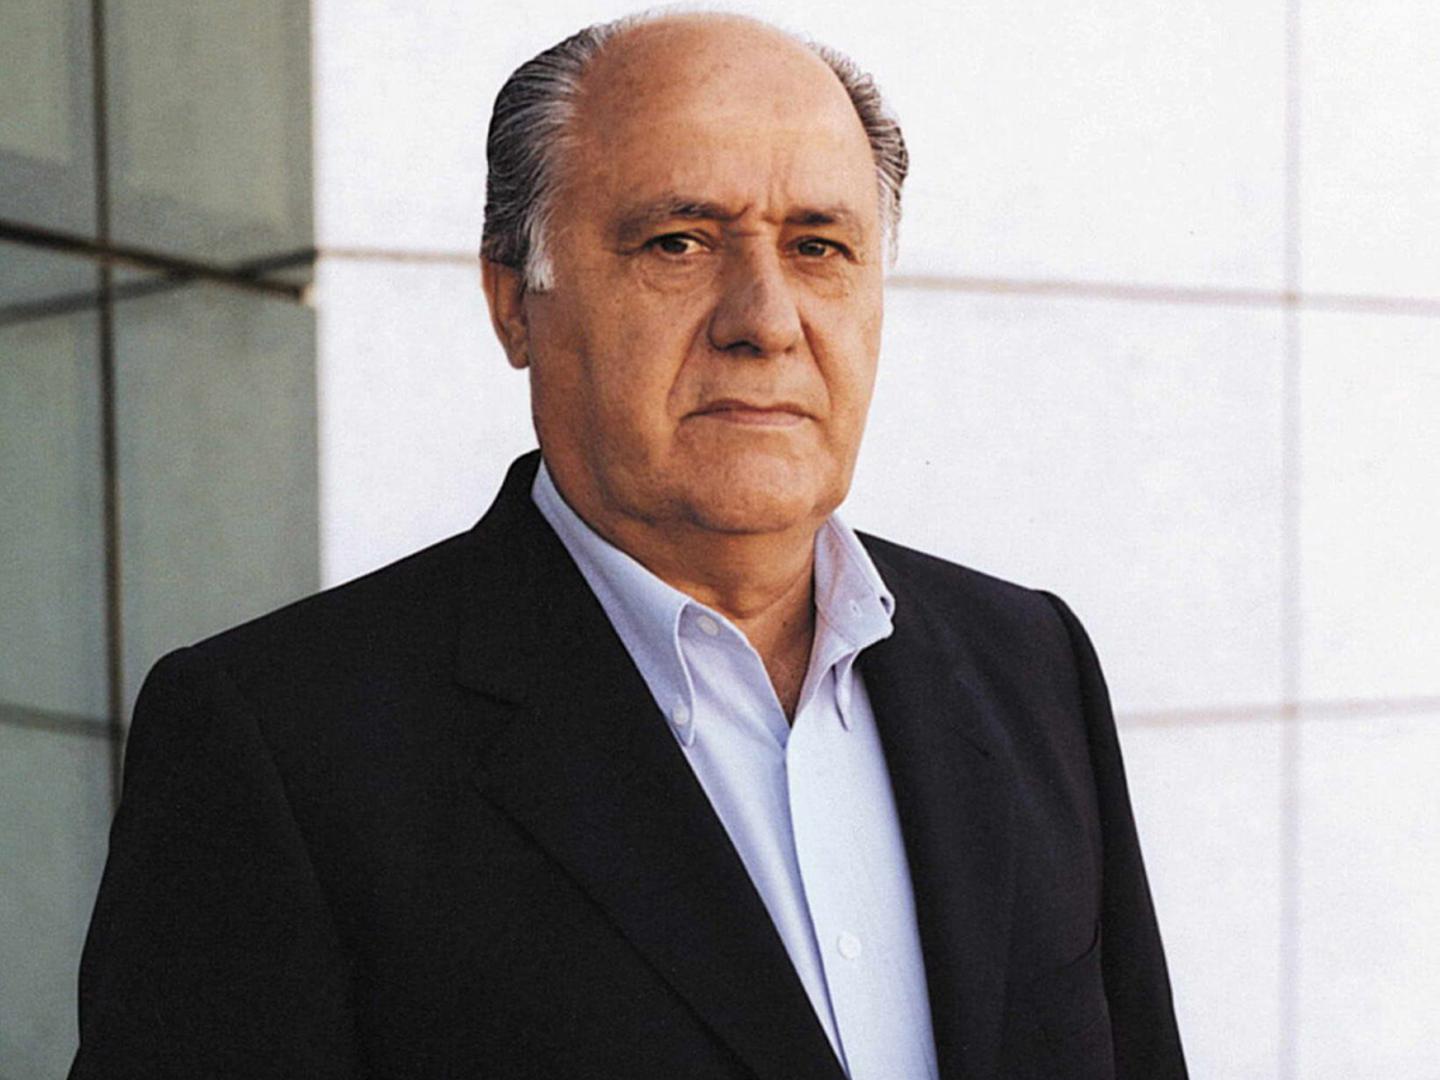 3. Amancio Ortega (Španjolska) - vlasnik 59 posto Inditexa u čijem vlasništvu je Zara - 82,1 milijardi dolara